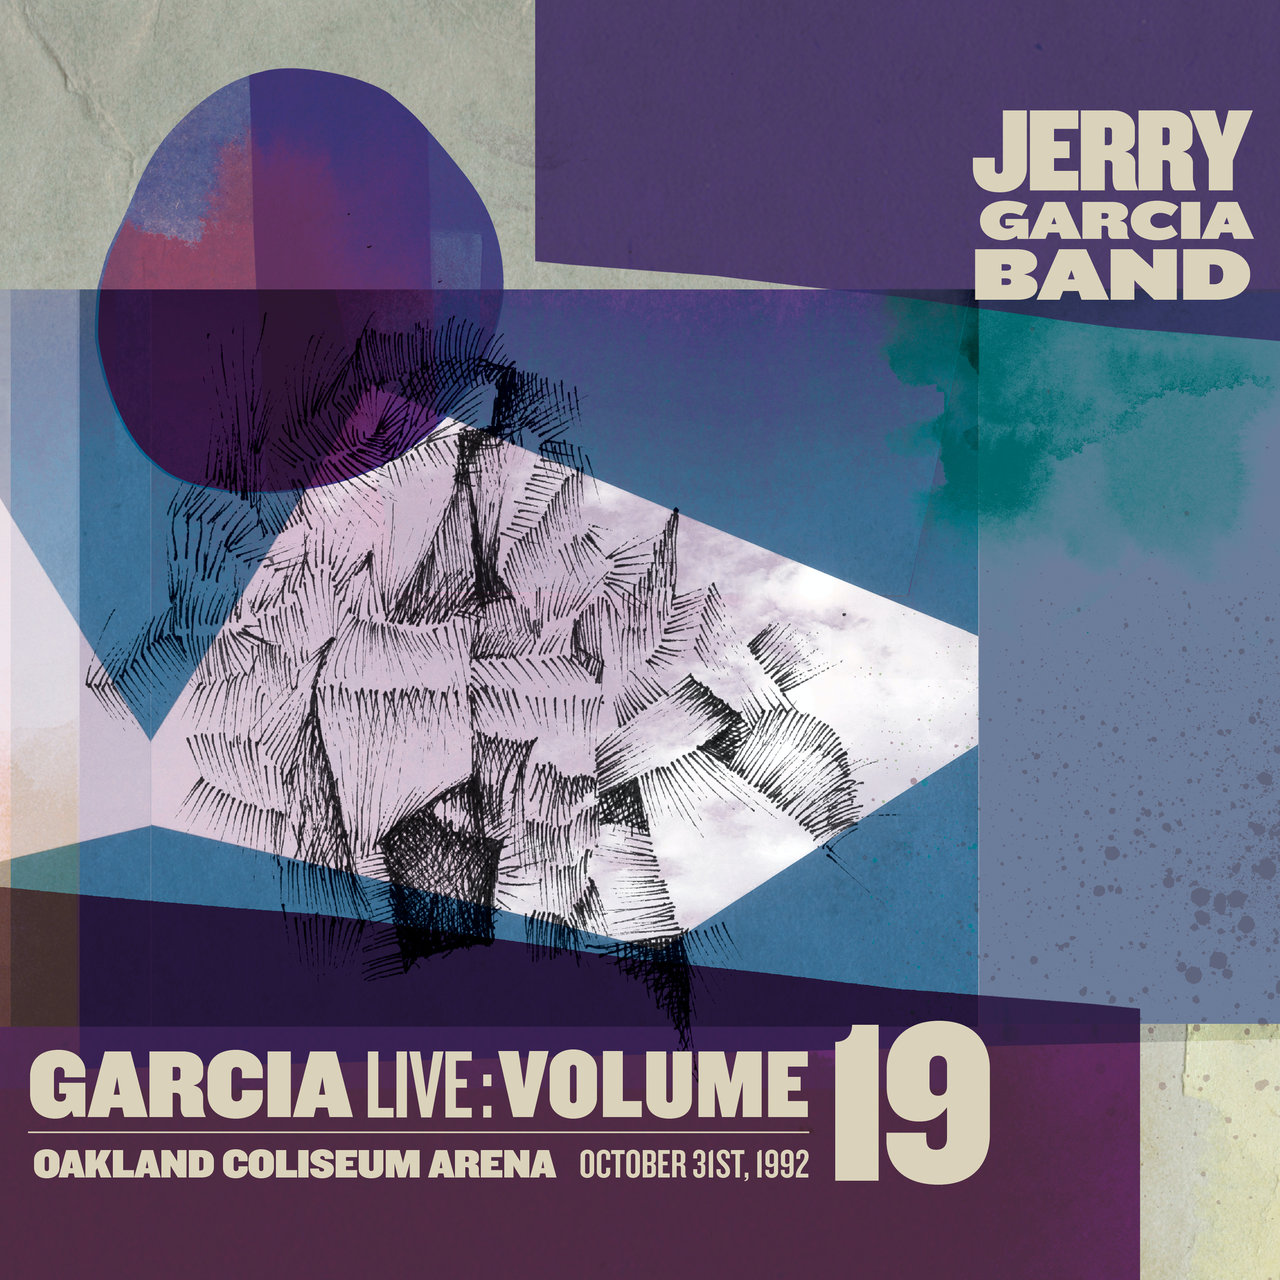 Jerry Garcia Band - GarciaLive Volume 19: October 31st, 1992 Oakland Coliseum Arena (2017) [FLAC 24bit/44,1kHz]